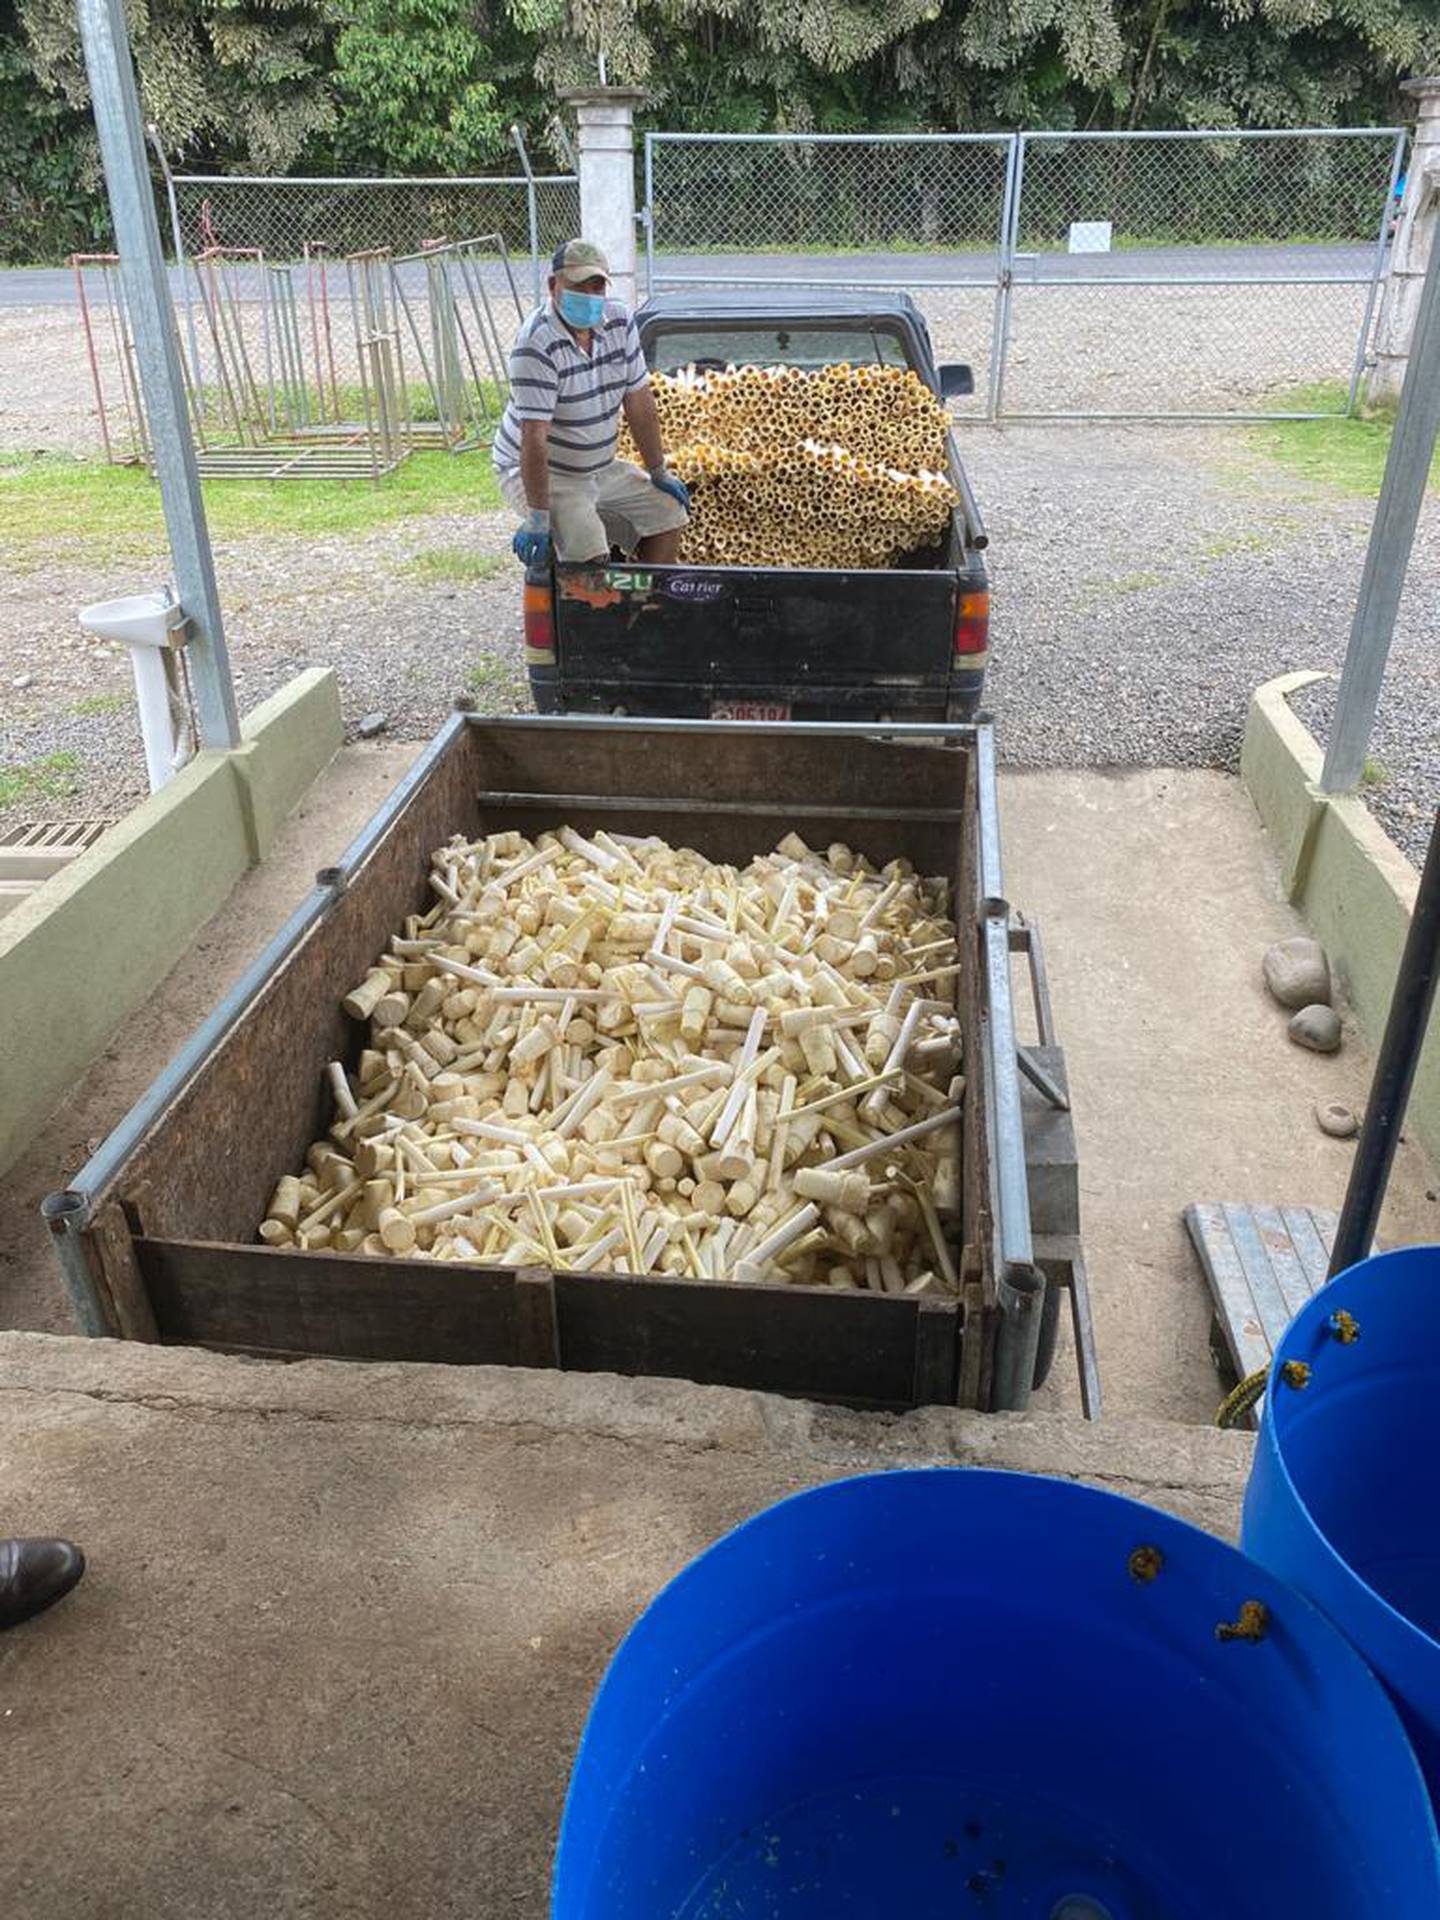 La empresa Palmini abrió una industria, en la cual con tecnologia se producen espaguetis y granos tipo arroz a base de palmito. Esto dará impulso a la producción. Foto: Cortesía.